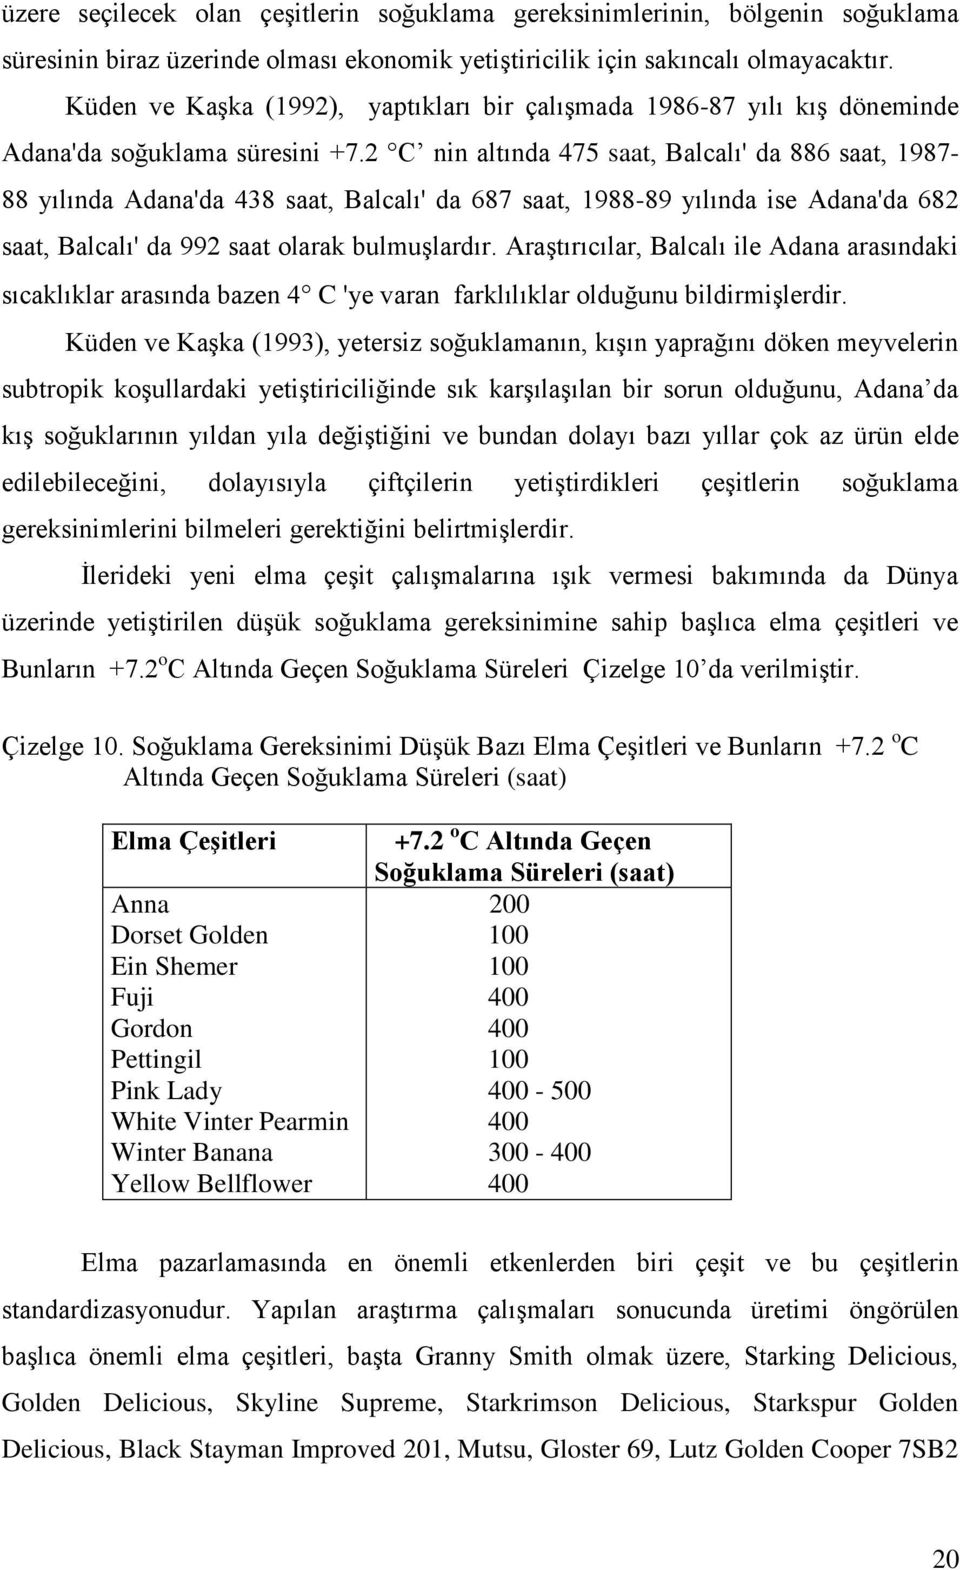 2 C nin altında 475 saat, Balcalı' da 886 saat, 1987-88 yılında Adana'da 438 saat, Balcalı' da 687 saat, 1988-89 yılında ise Adana'da 682 saat, Balcalı' da 992 saat olarak bulmuşlardır.